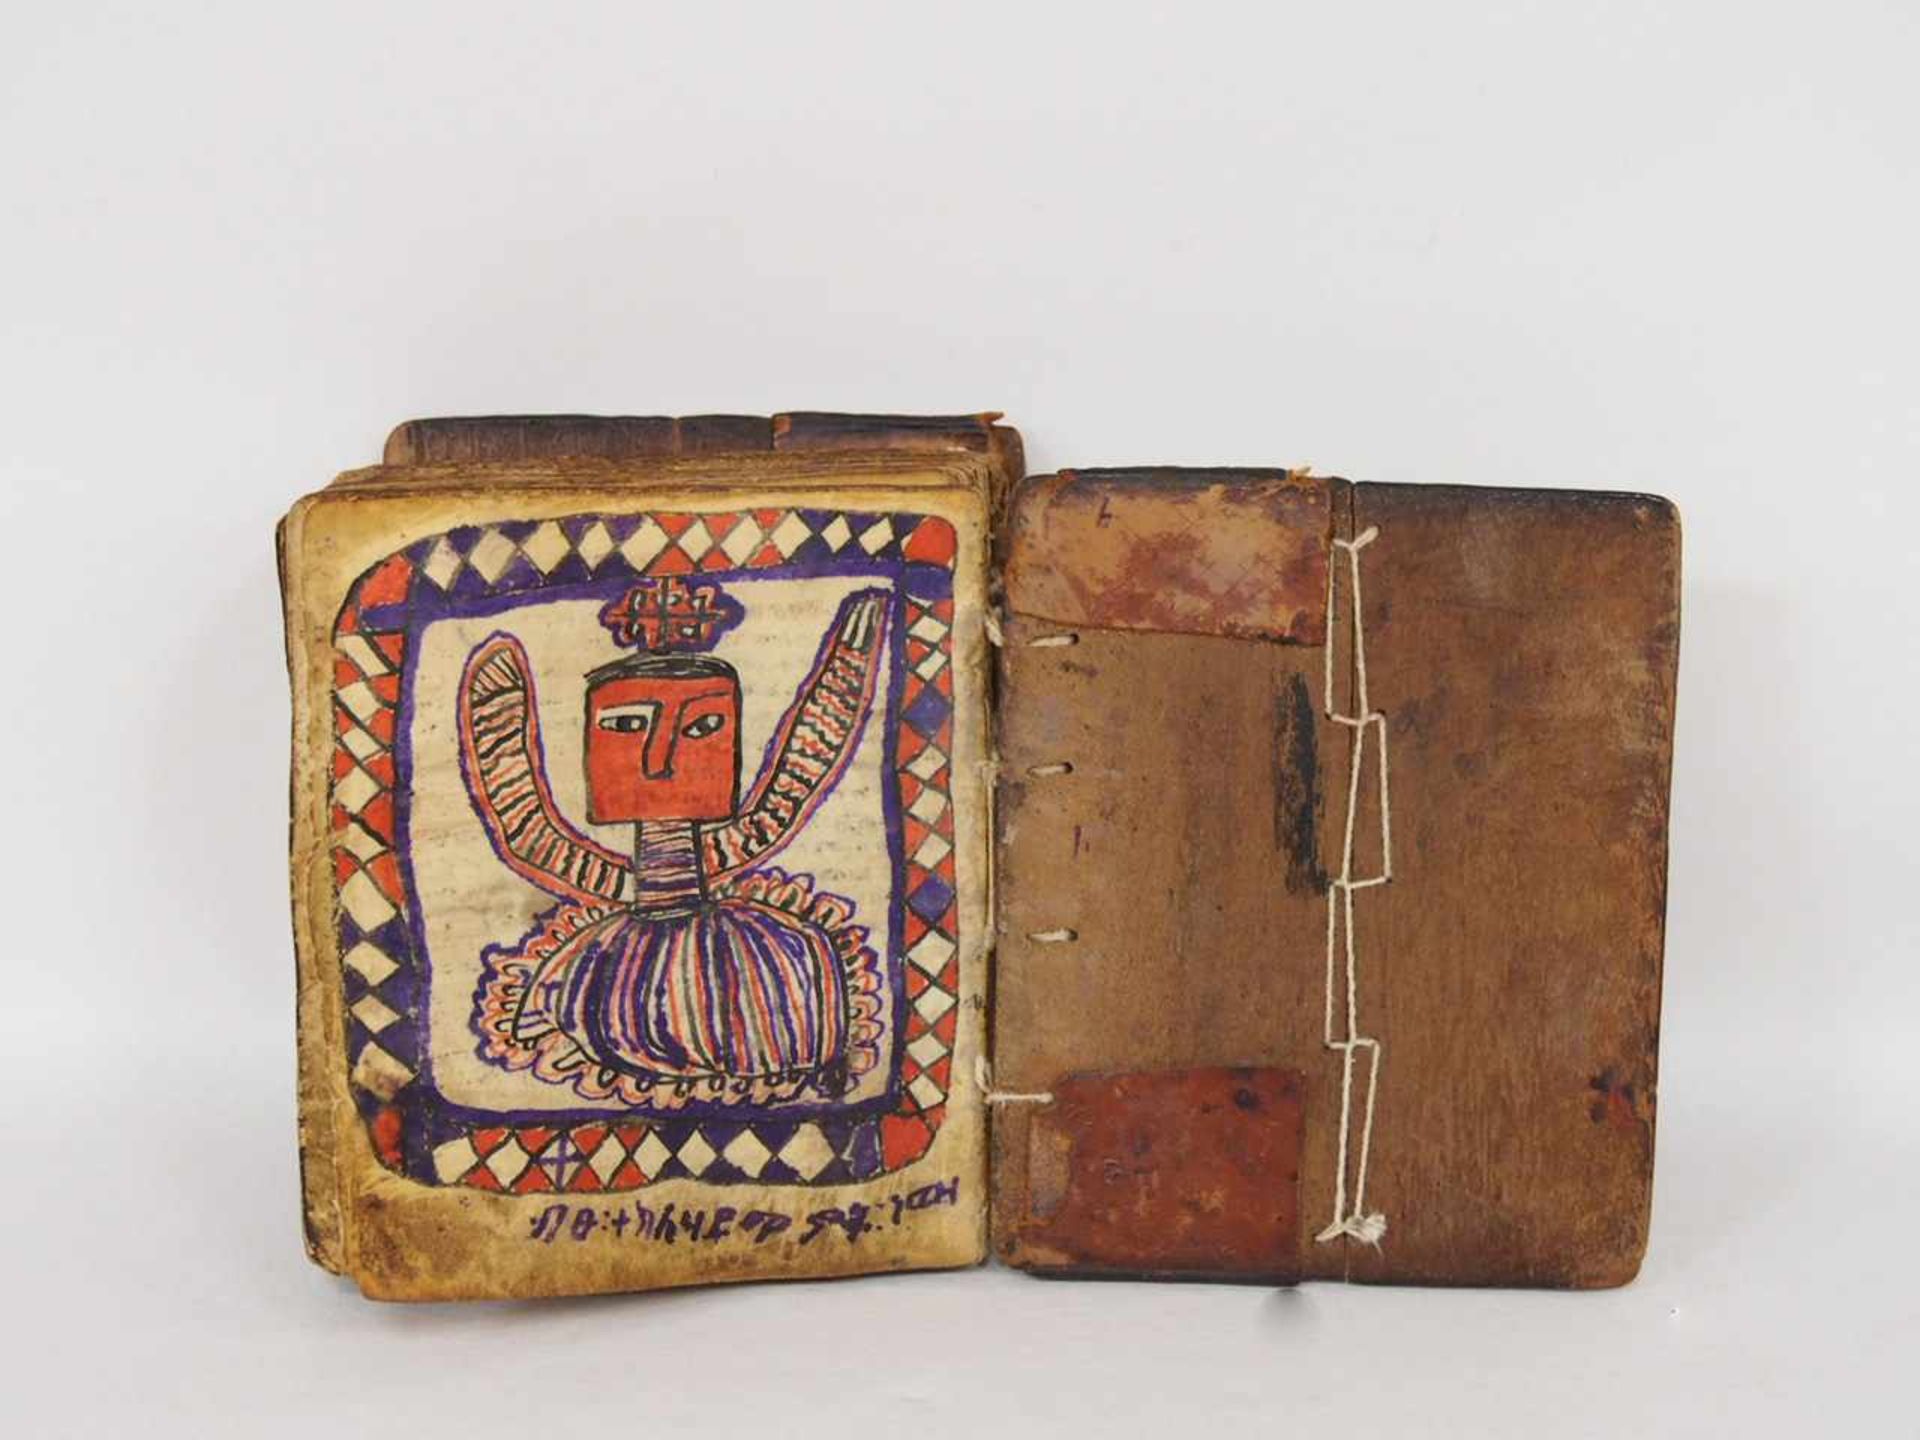 BibelHandschrift mit Bildvignetten auf Pergament, Holzdeckel, zugehörige Ledertasche, 14 x 12 cm - Bild 2 aus 4